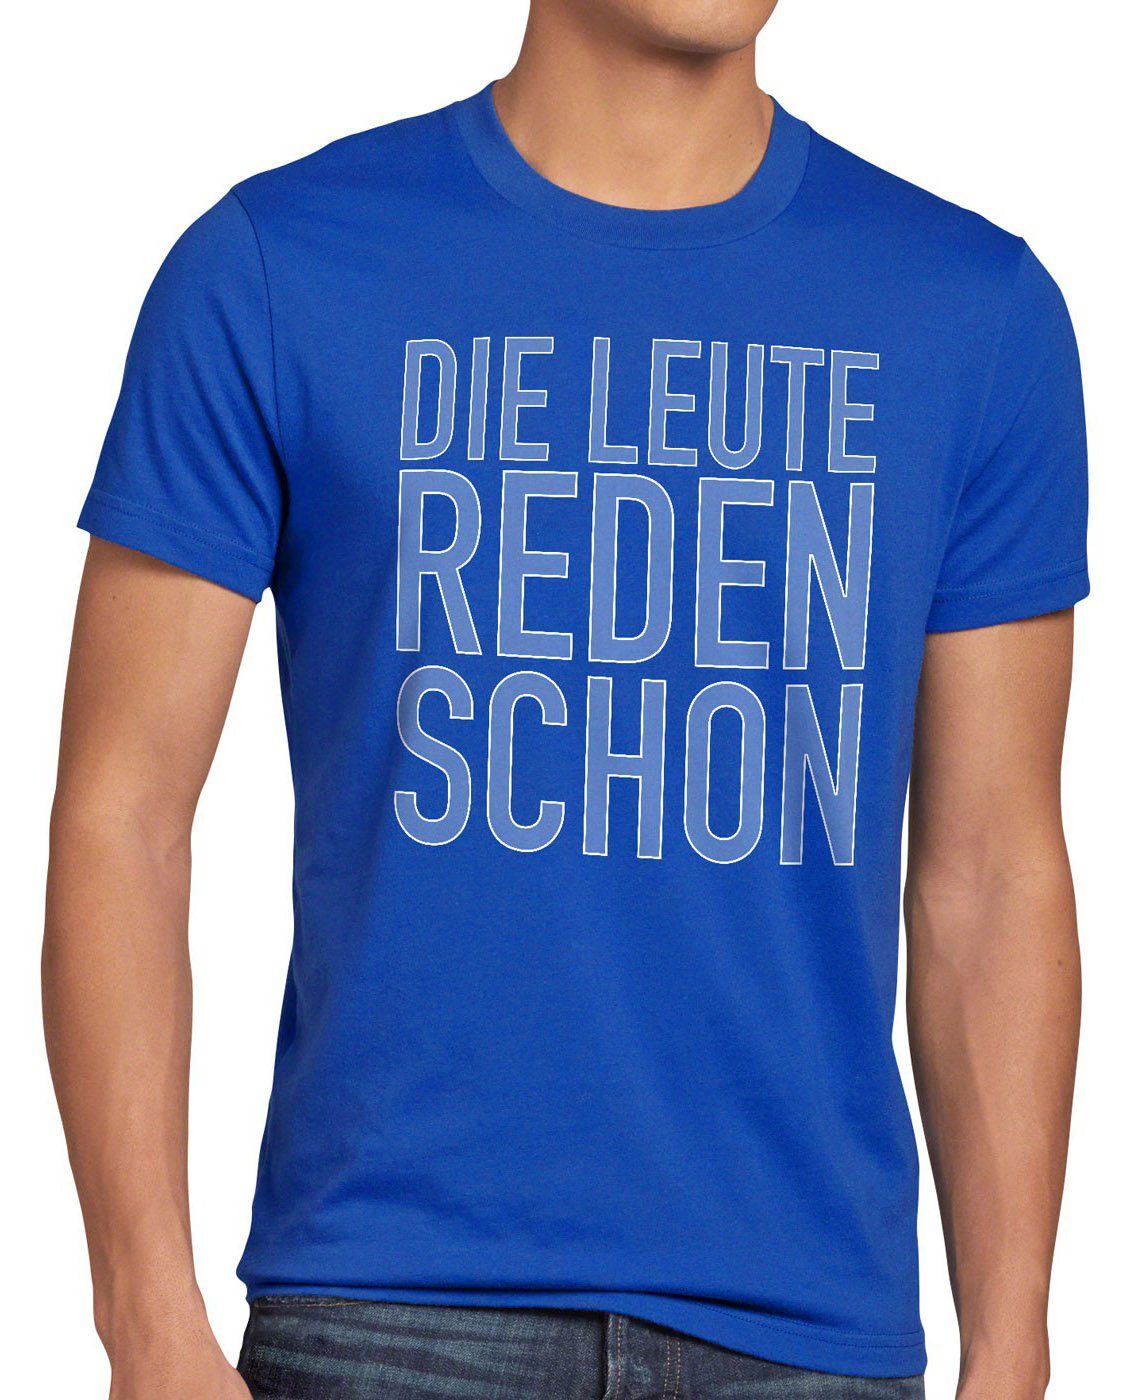 style3 Print-Shirt Herren T-Shirt spruchshirt Spruch reden schon Leute blau hipster Die Berlin Funshirt